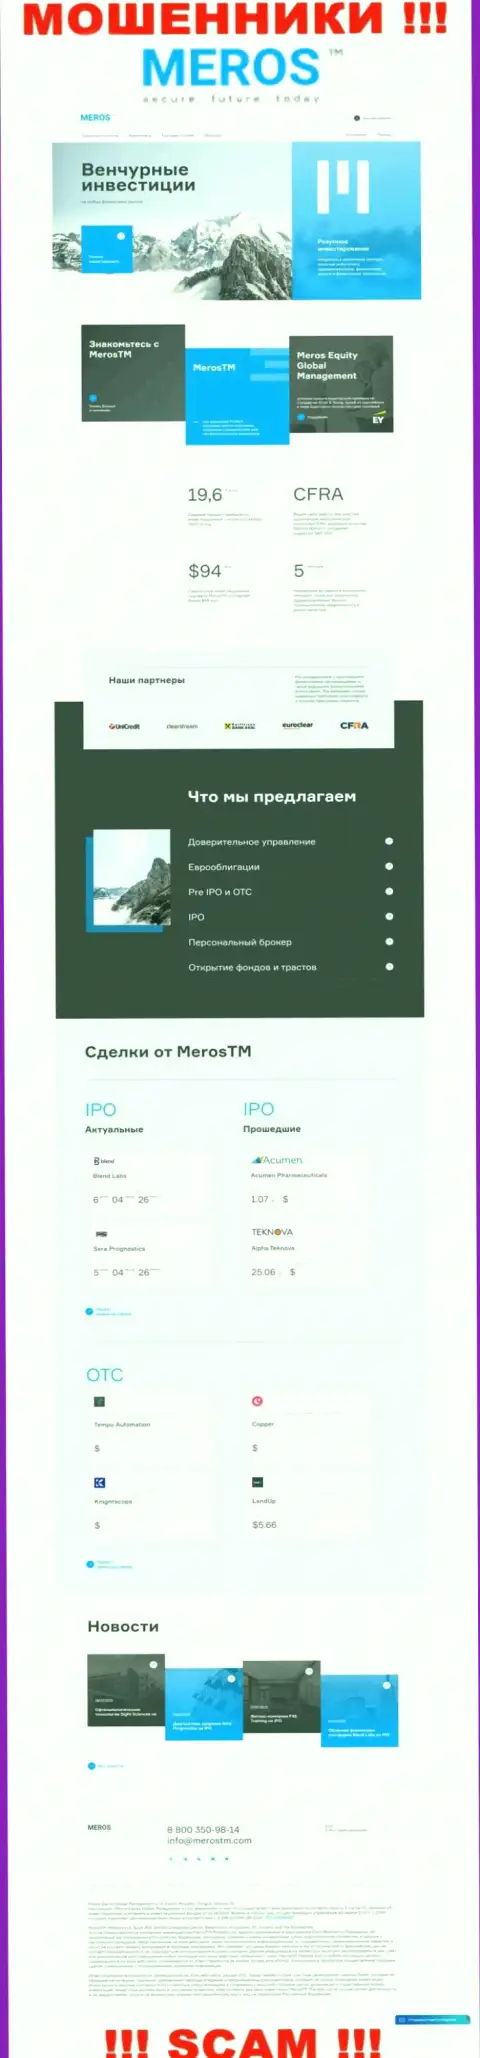 Разбор официального информационного сервиса лохотронщиков MerosTM